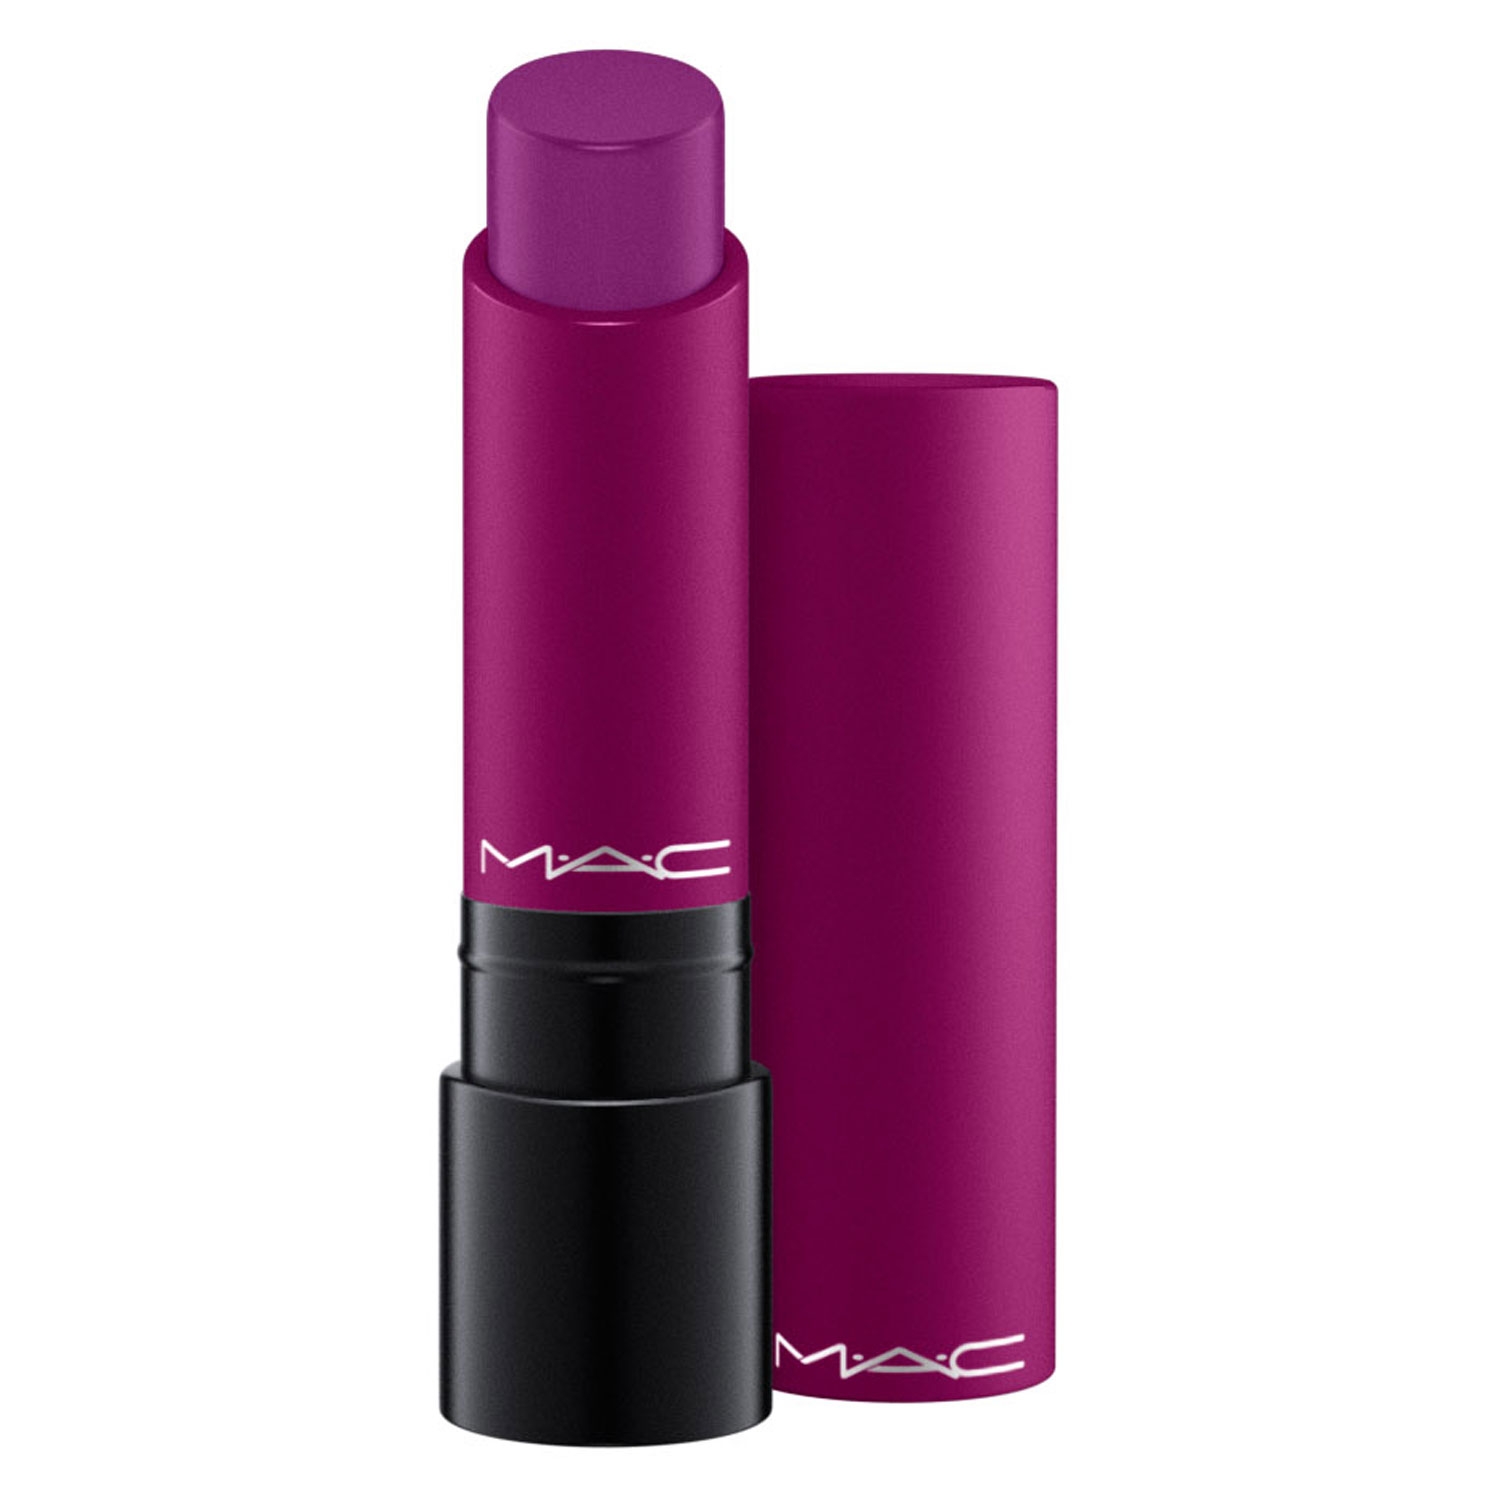 Produktbild von Liptensity Lipstick - Hellebore